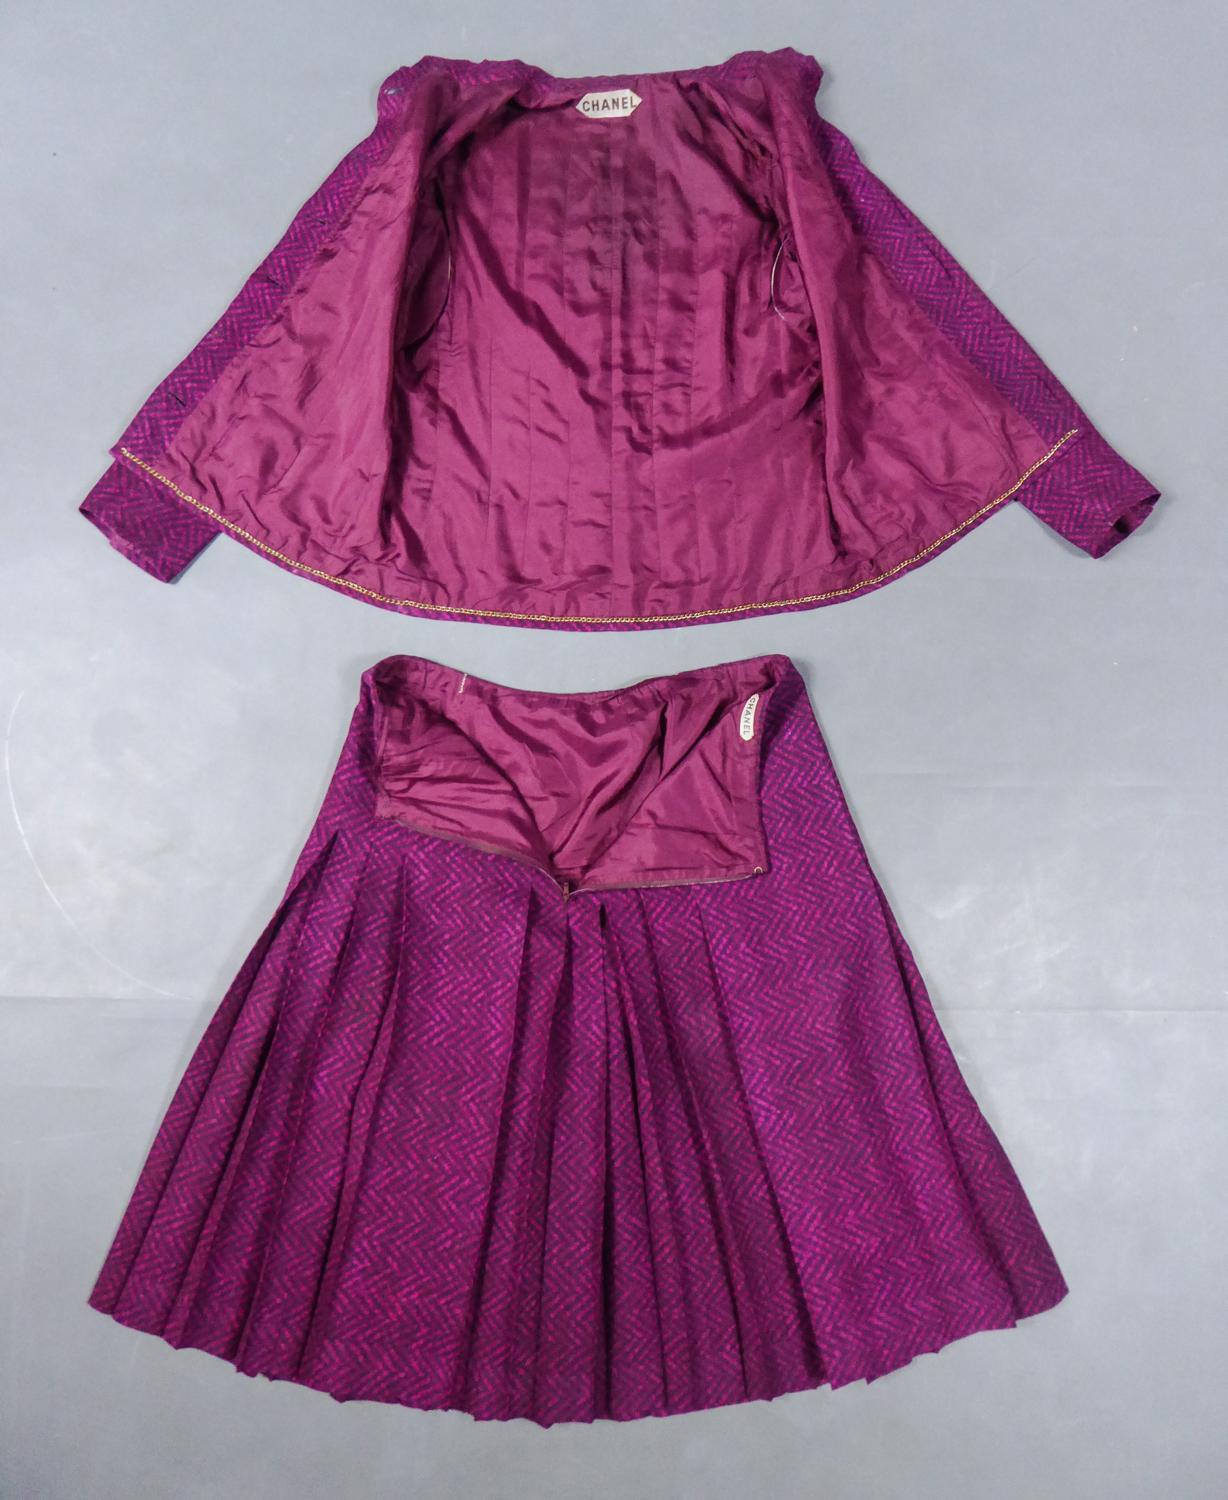 Circa 1980
France

Rare ensemble jupe et veste Chanel Haute Couture pour l'été datant du début des années 80. Serge de soie imprimée d'un motif zigzag fushchia sur fond bordeaux. Veste avec col mandarin et chaîne en laiton cousue à l'intérieur,